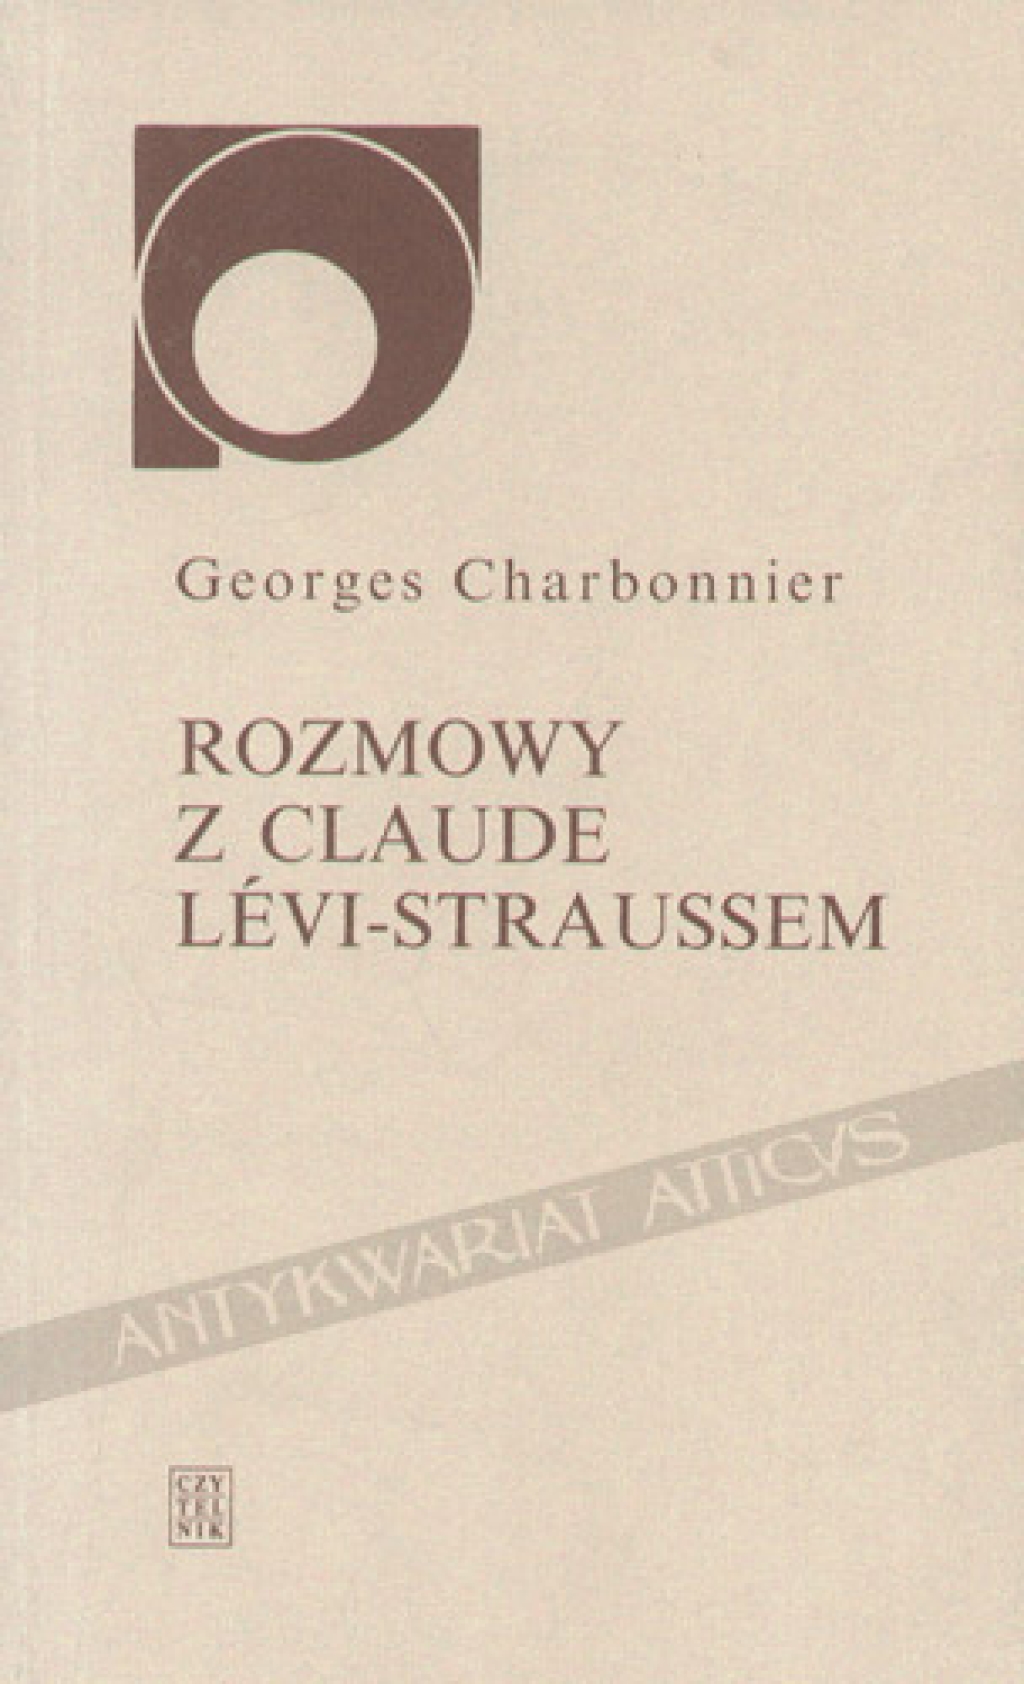 Rozmowy z Claude Levi-Straussem